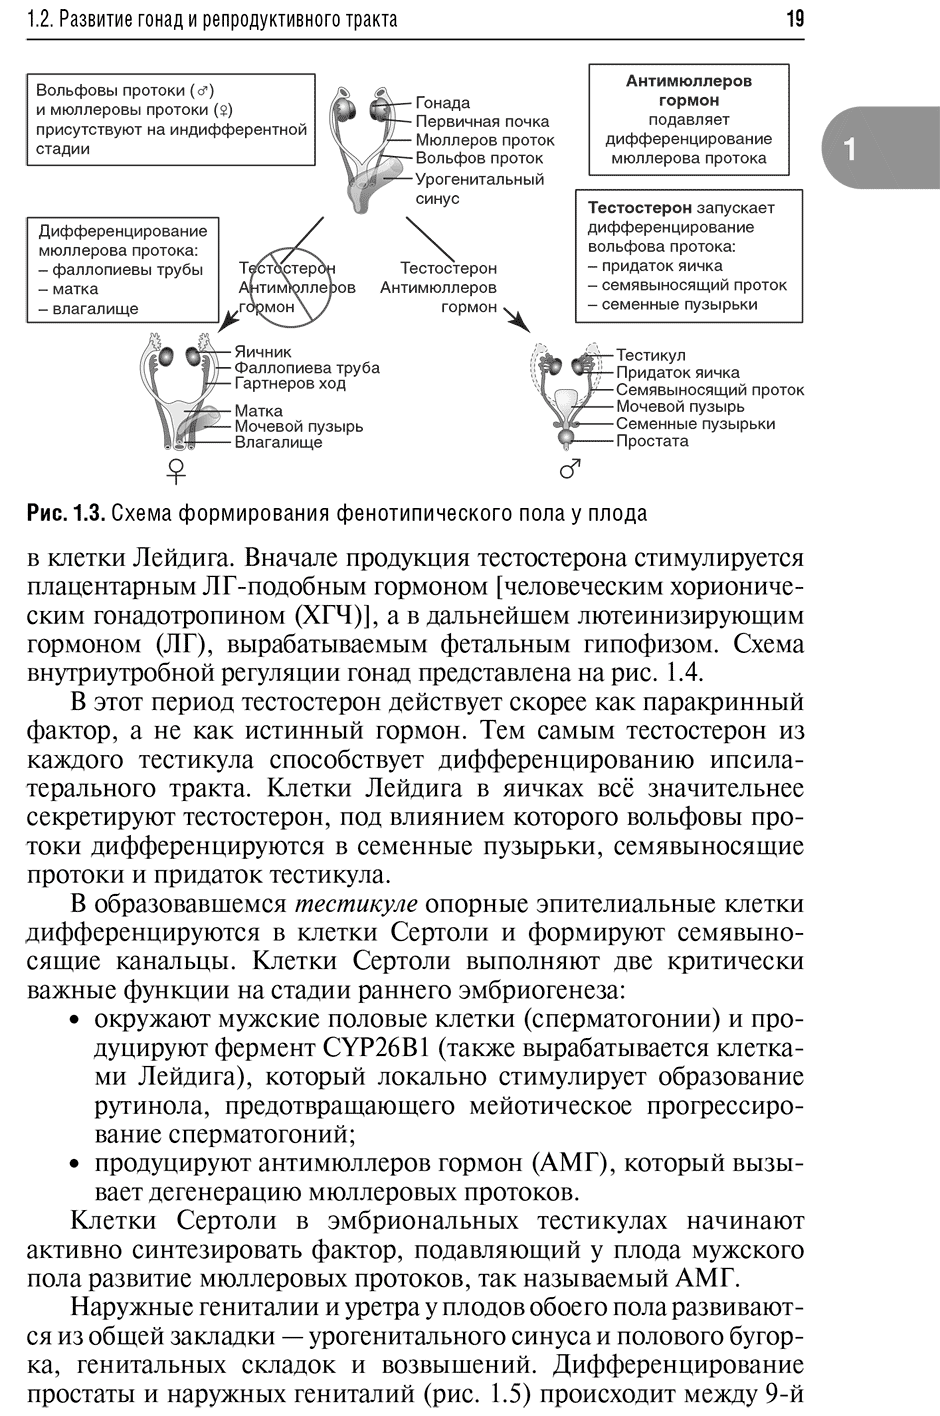 Рис. 1.3. Схема формирования фенотипического пола у плода